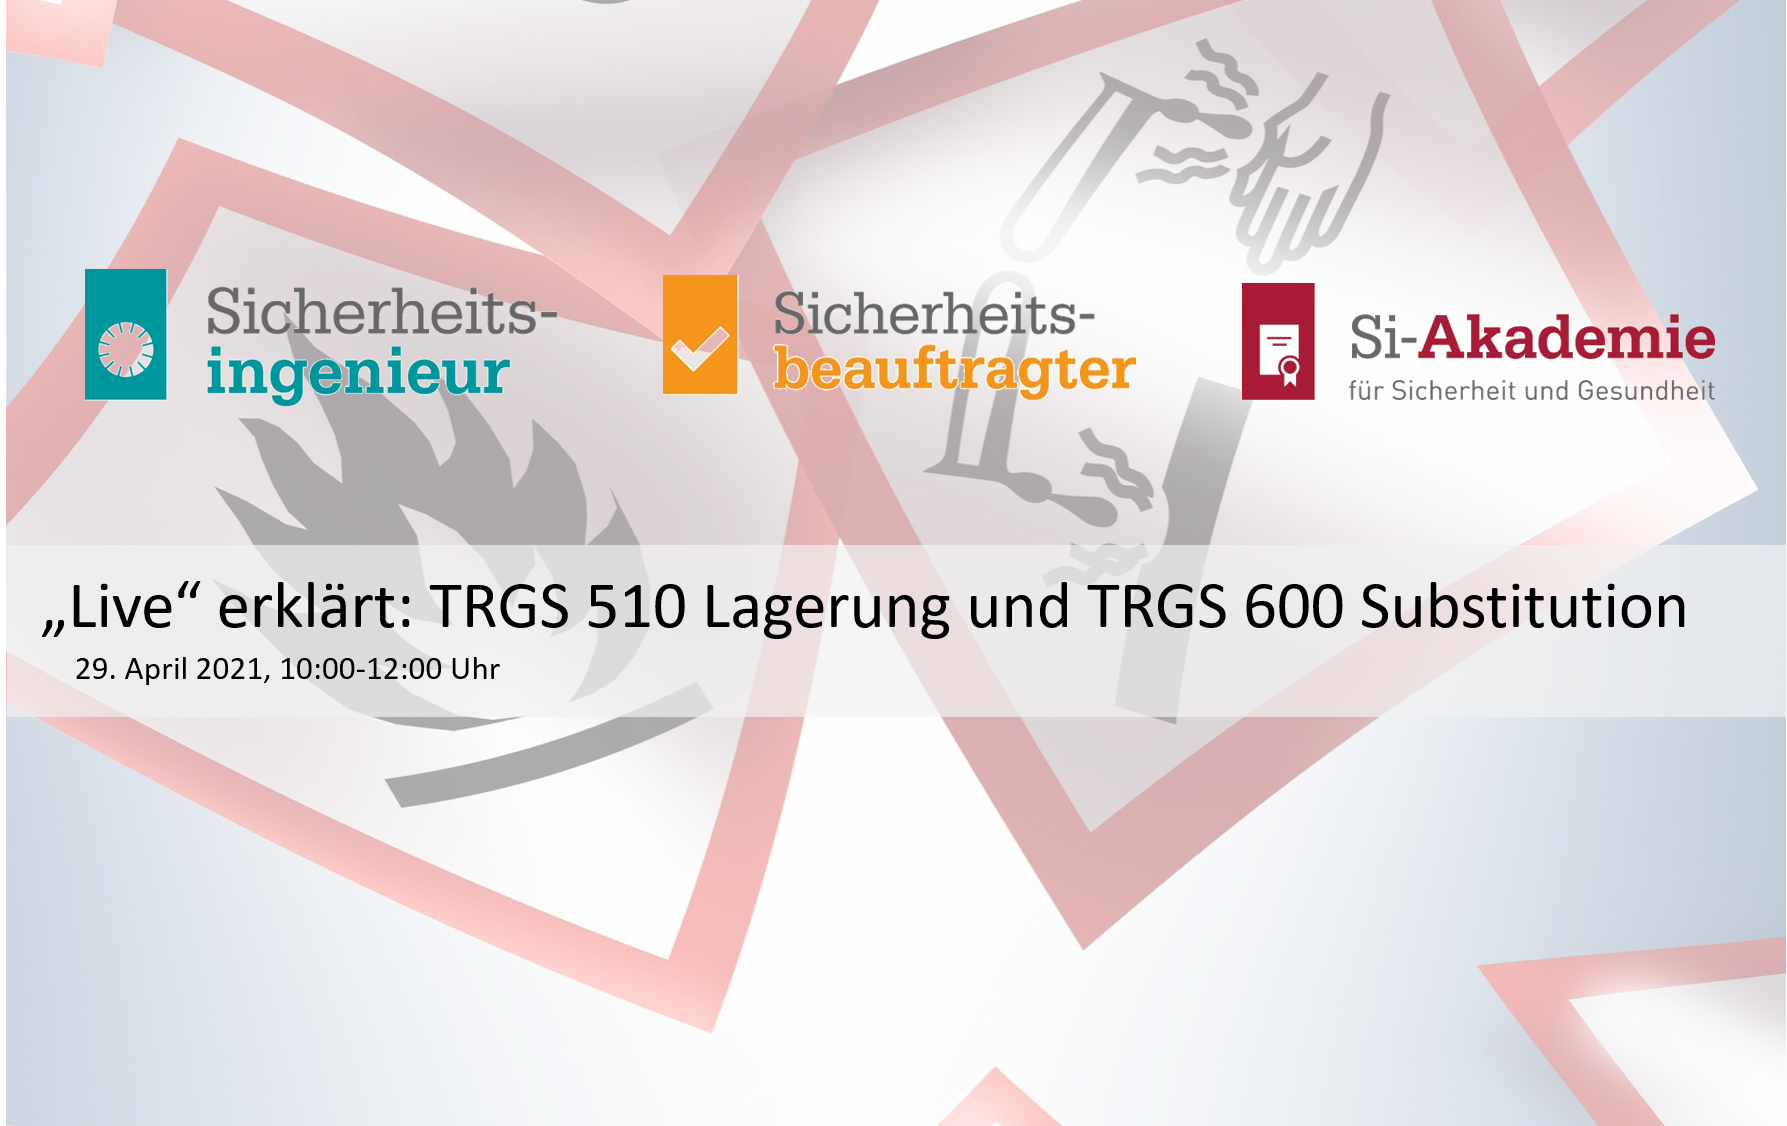 Präsentation Dr. Birgit Stöffler: TRGS 600 Substitution